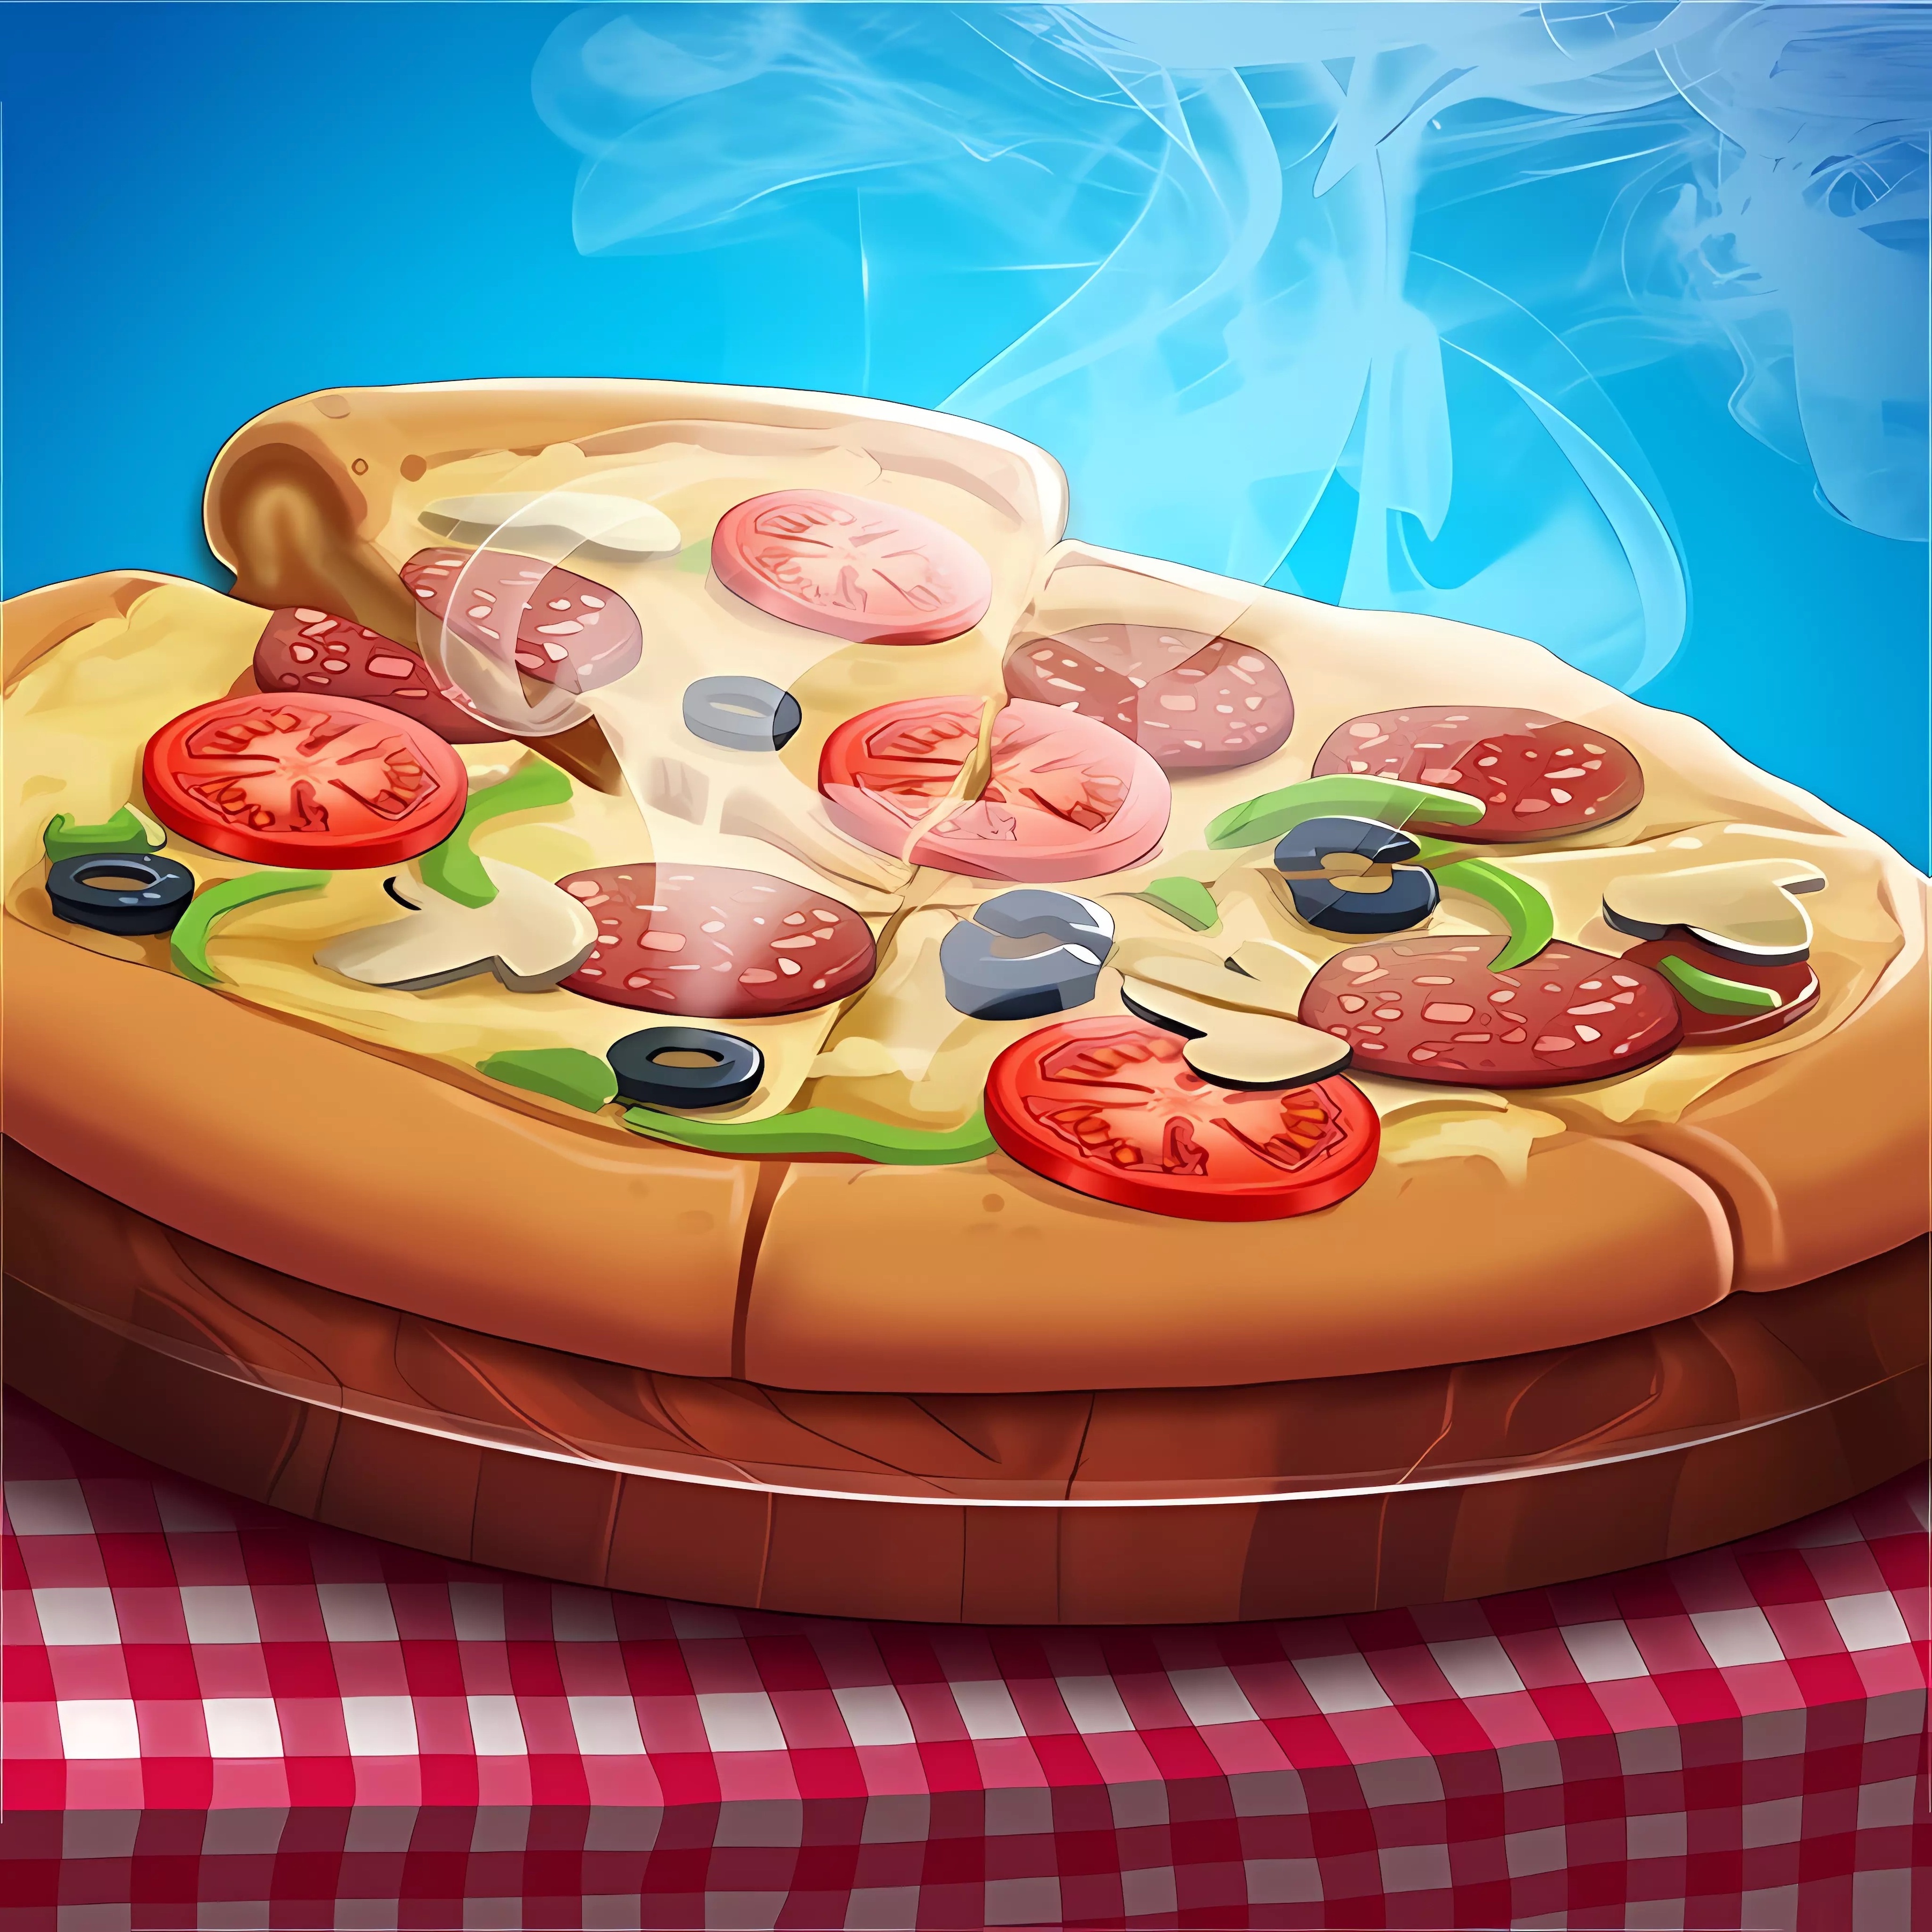 турбо пицца играть онлайн бесплатно полная версия фото 75